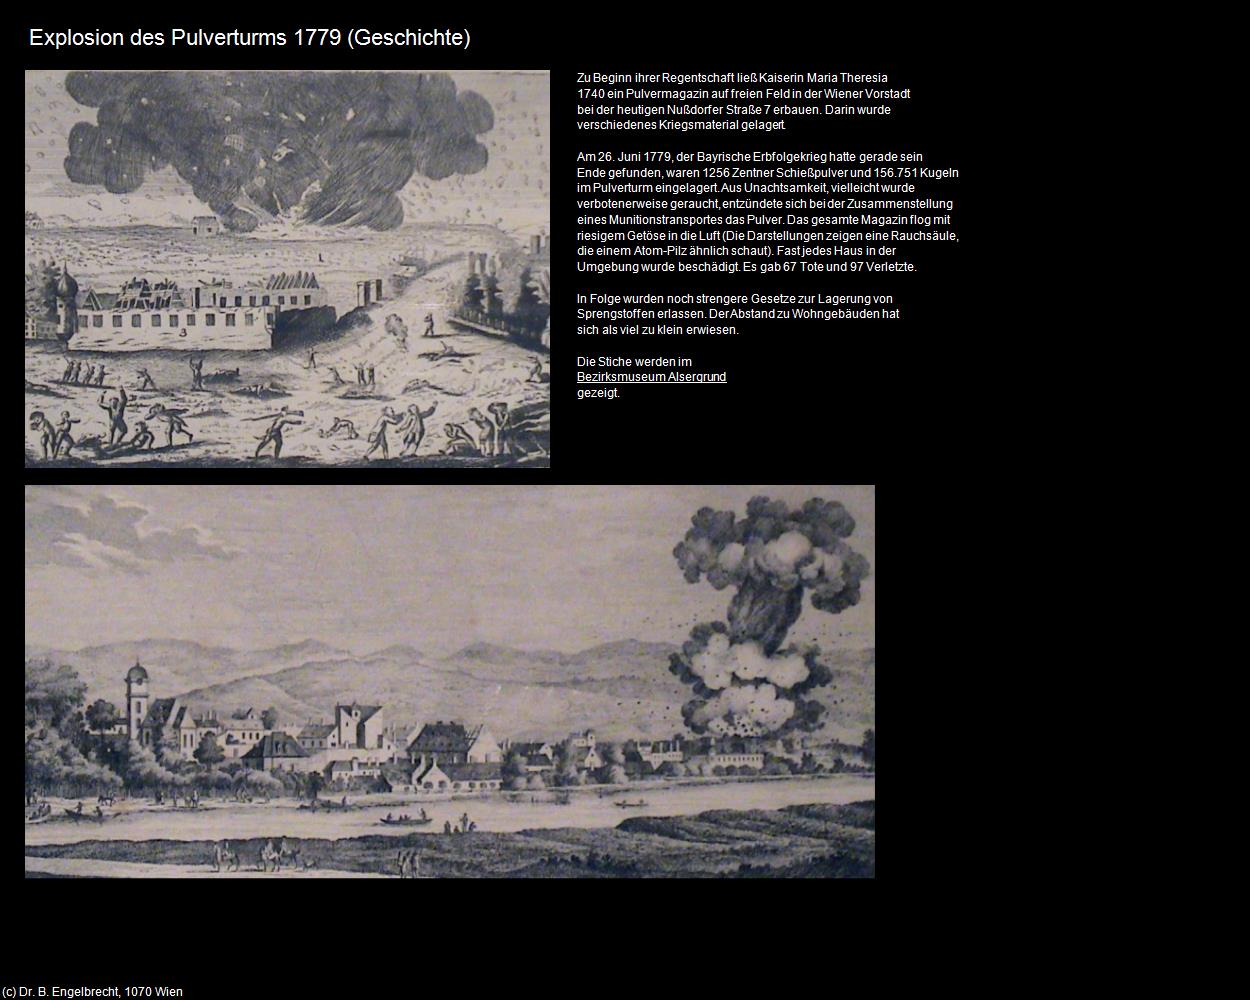 Explosion des Pulverturms 1779 (09-IX. Bezirk-Alsergrund) in Kulturatlas-WIEN(c)B.Engelbrecht